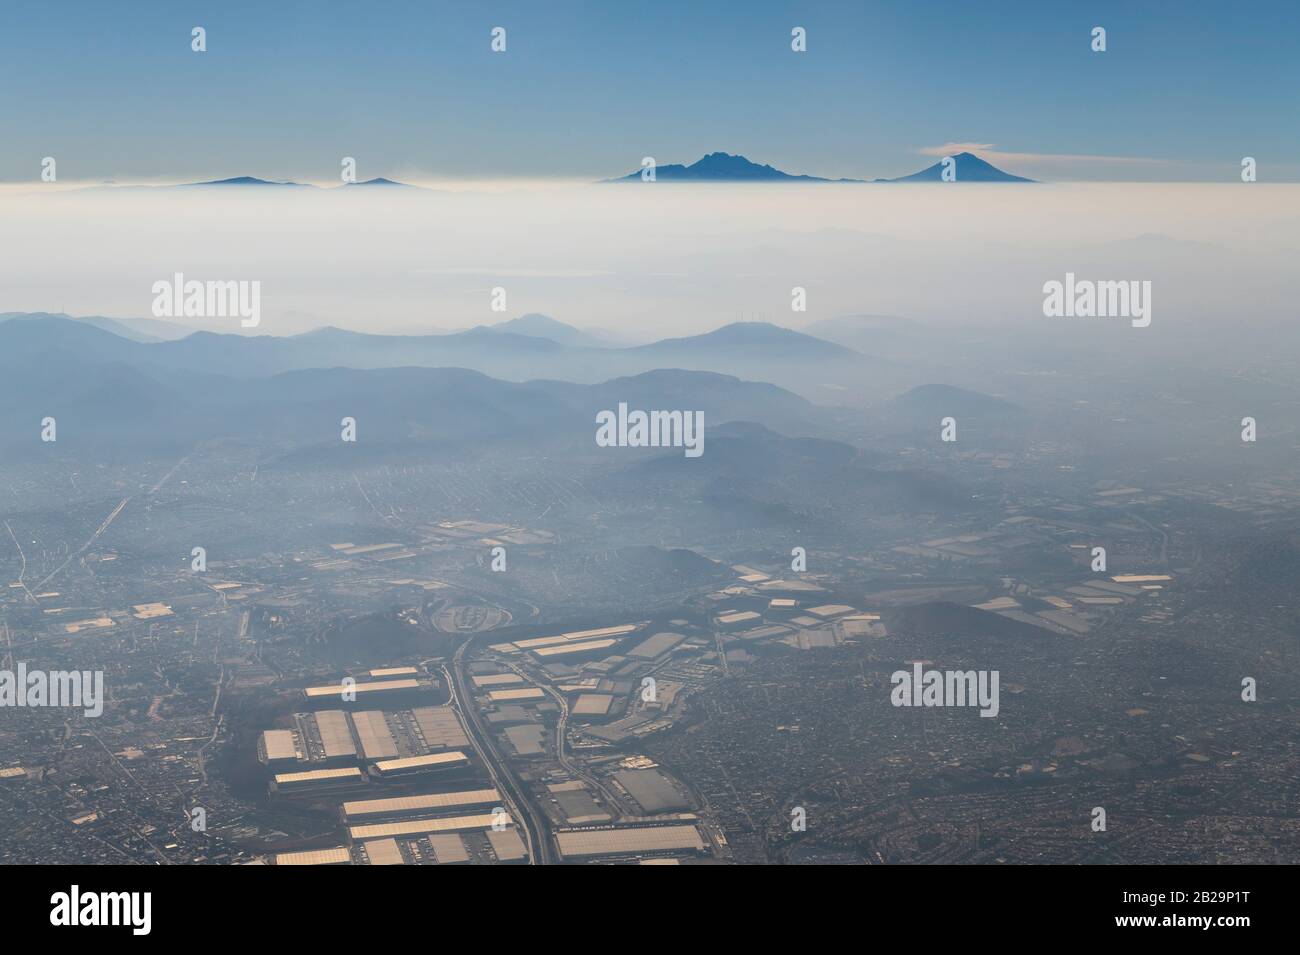 Luftaufnahme von Mexiko-Stadt im Smog und Nebel mit dem aktiven Vulkan Popocatepetl und dem ruhenden Vulkan Iztaccihuatl am Horizont, Mexiko. Stockfoto